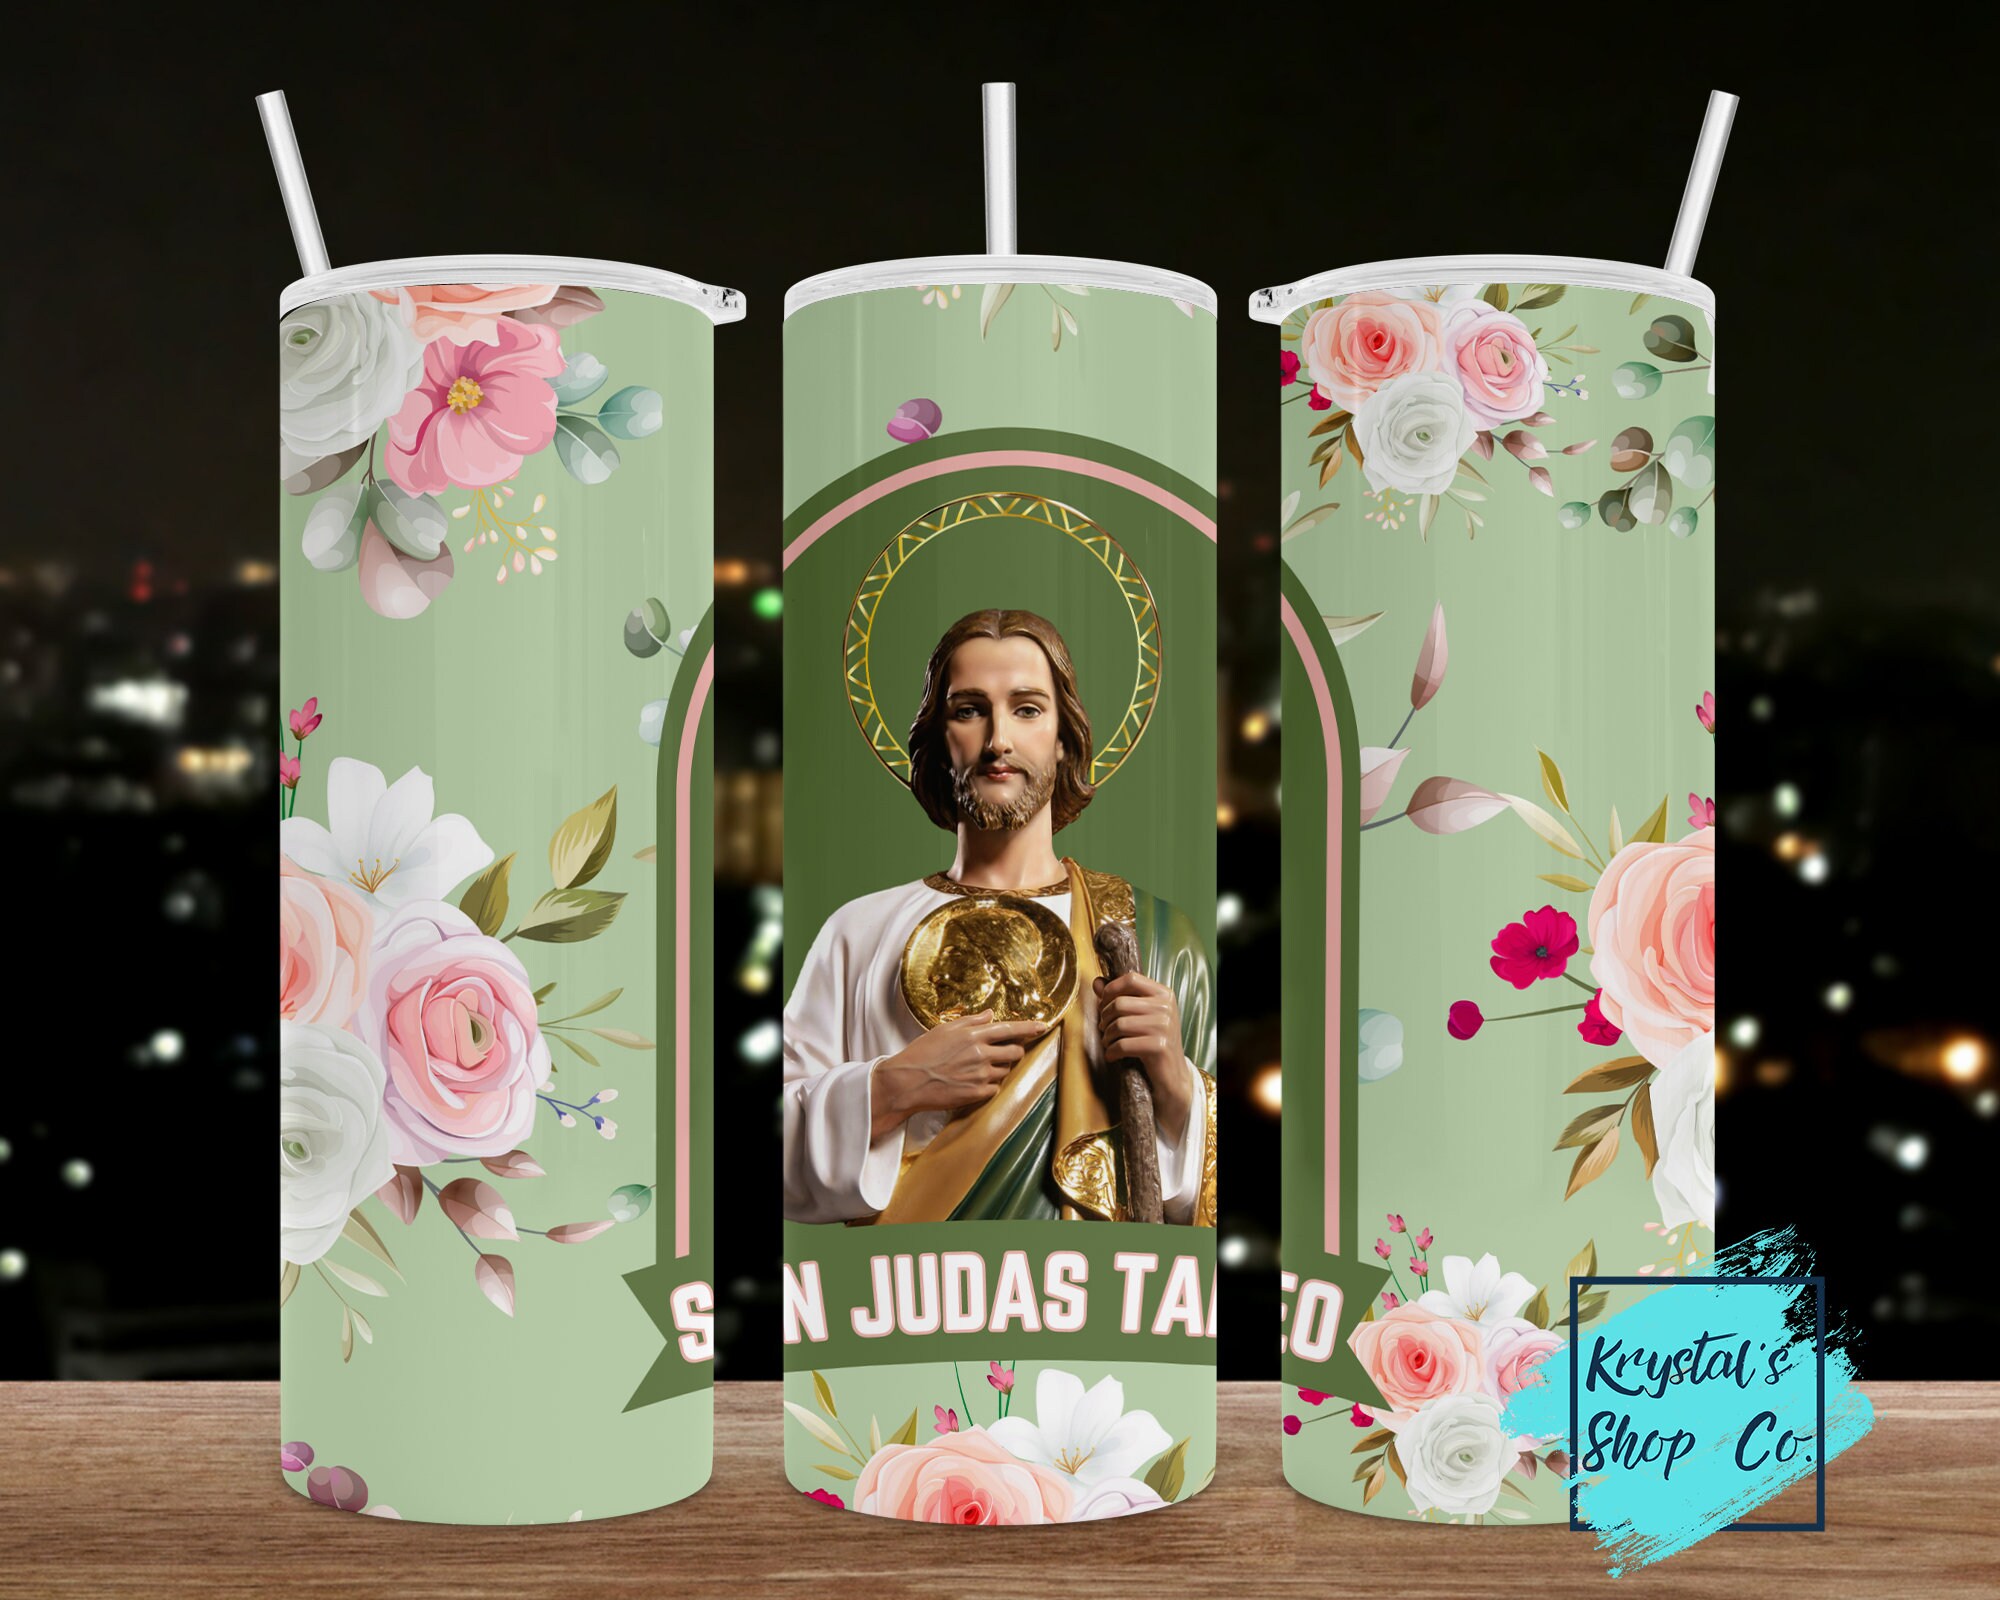 Snowglobe Cups  San Judas Tadeo Custom ordered Snowglobe